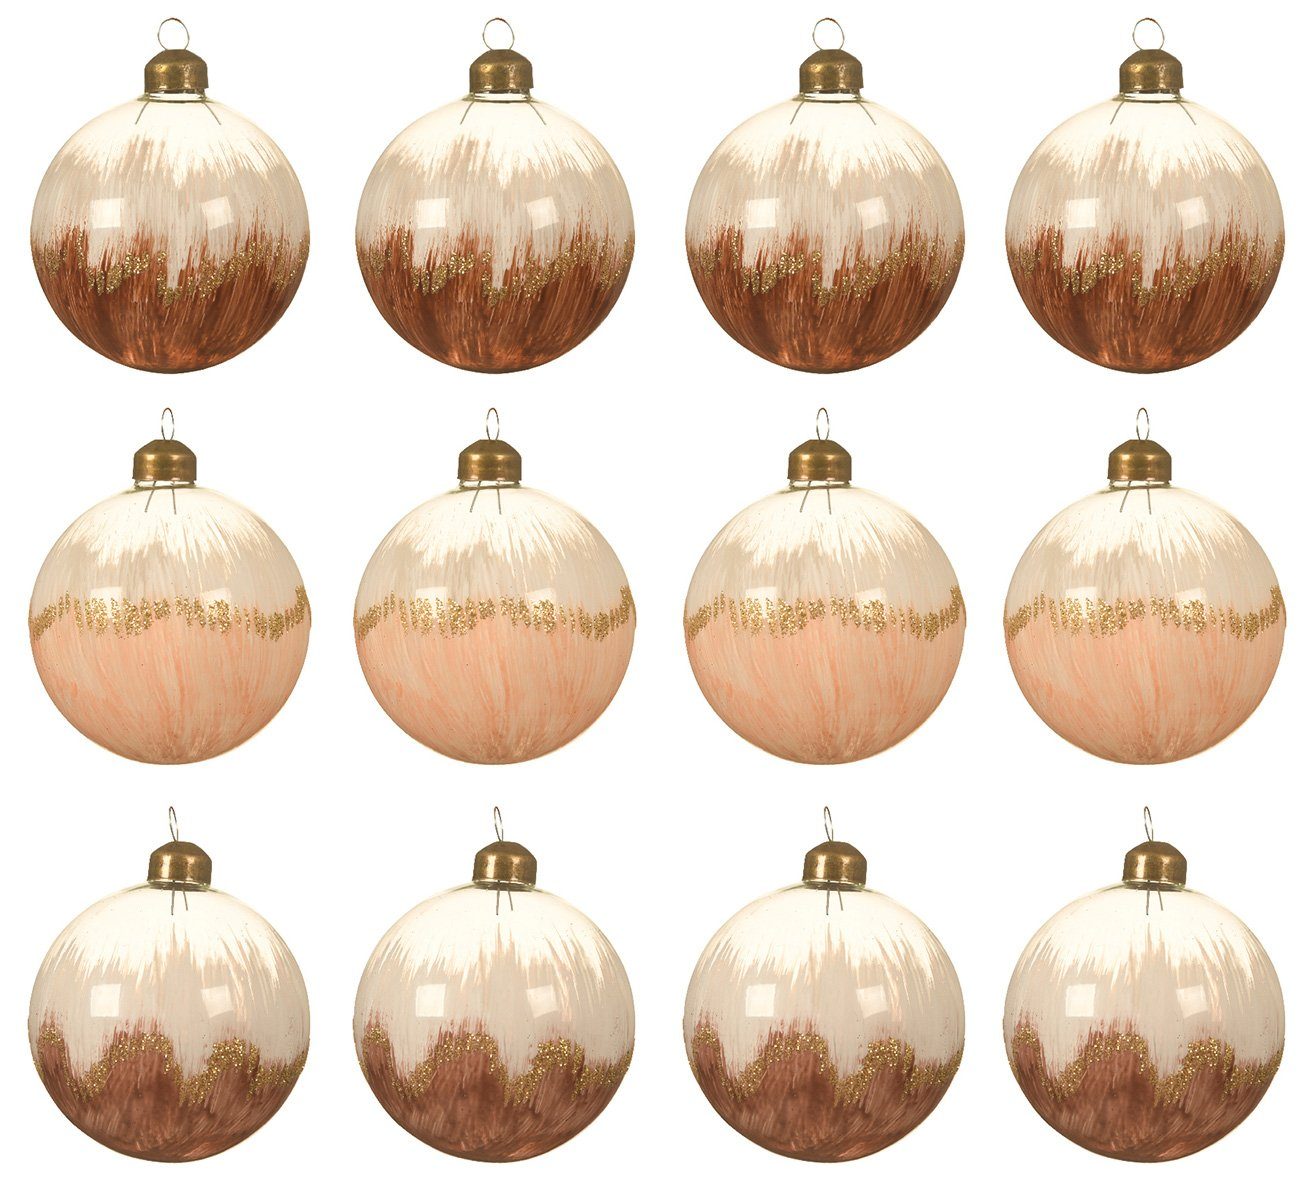 Decoris 12er Weihnachtskugeln 8cm mit Verlauf Weihnachtsbaumkugel, Glas / braun decorations season bemalt beige Set